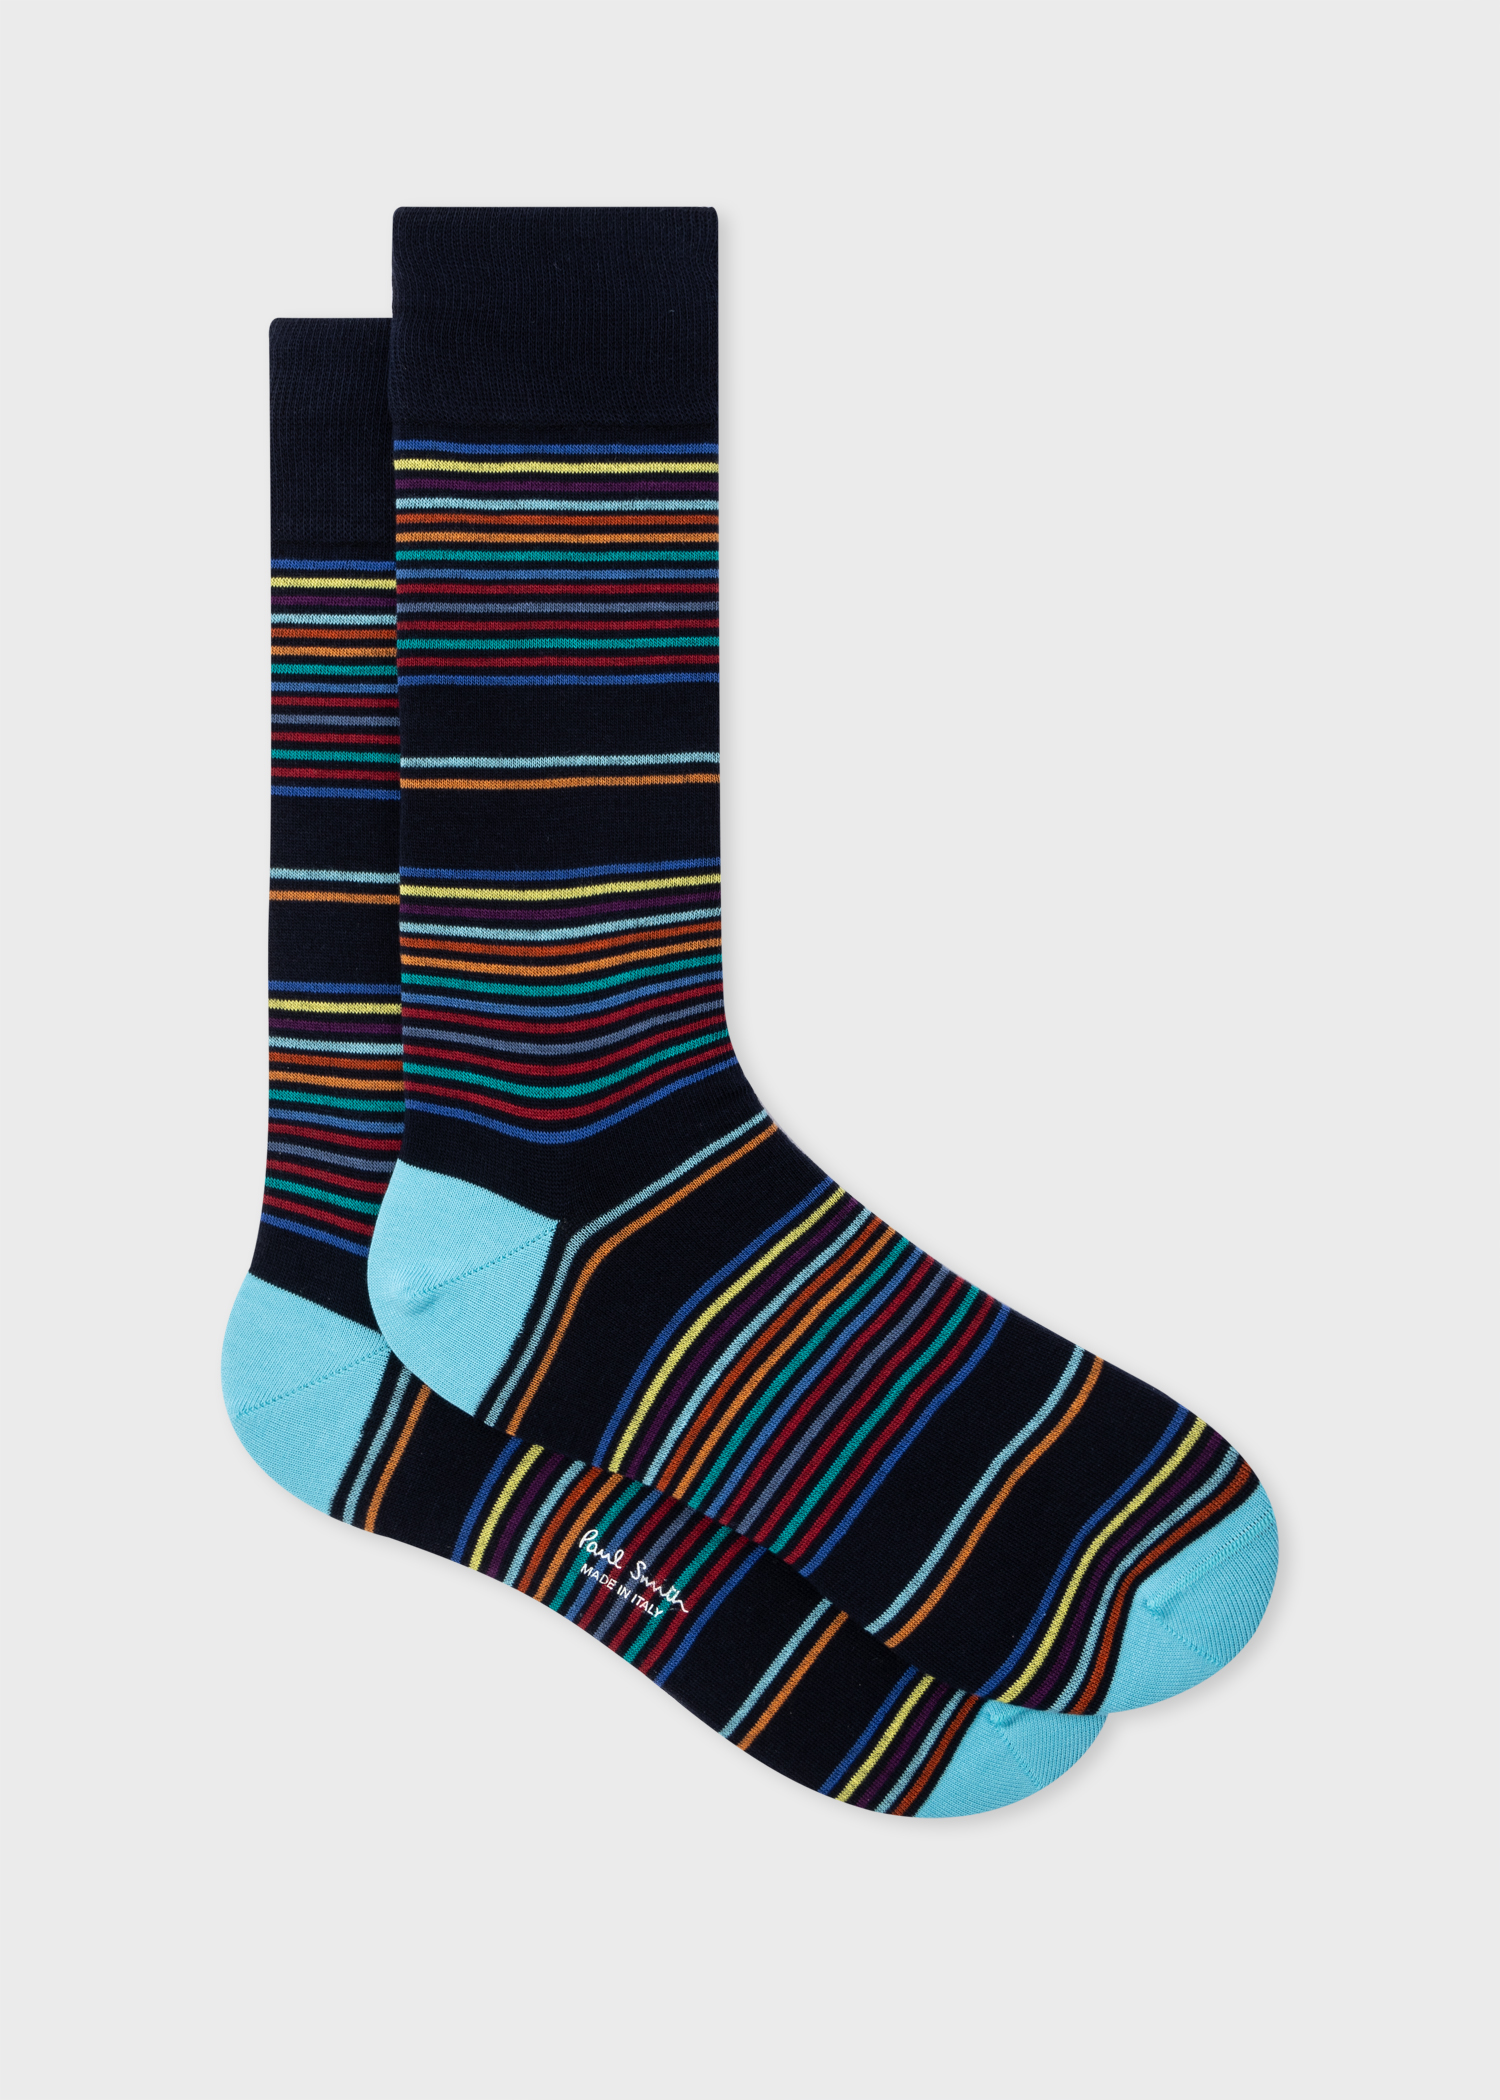 Men's Navy and Turquoise Multi-Stripe Socks